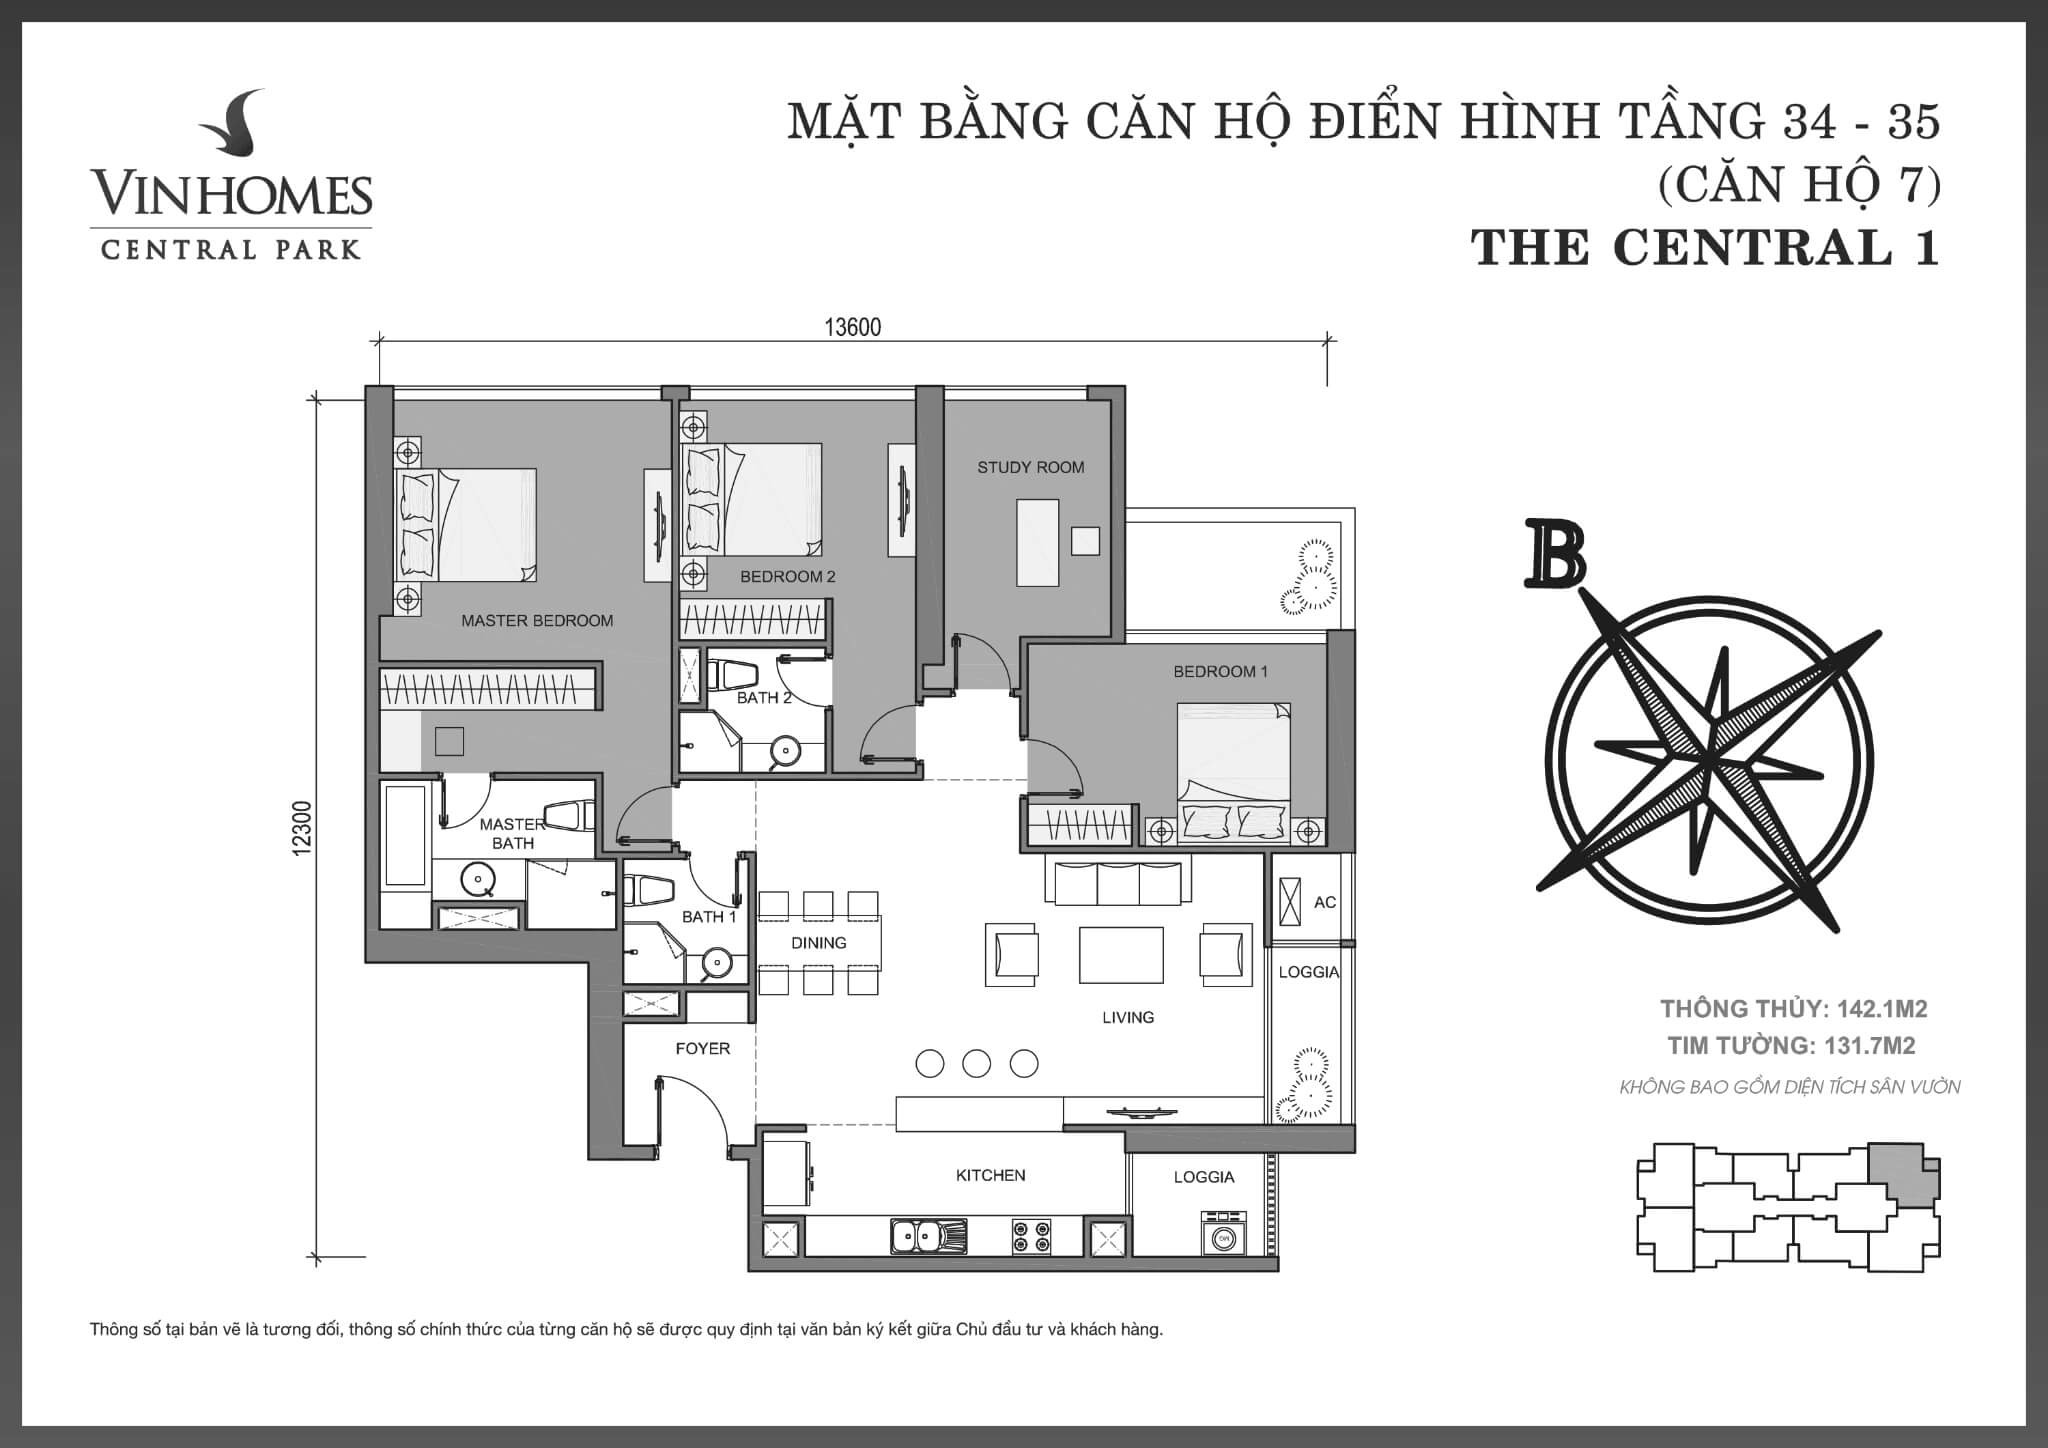 layout căn hộ số 7 tầng 34-35 Central 1